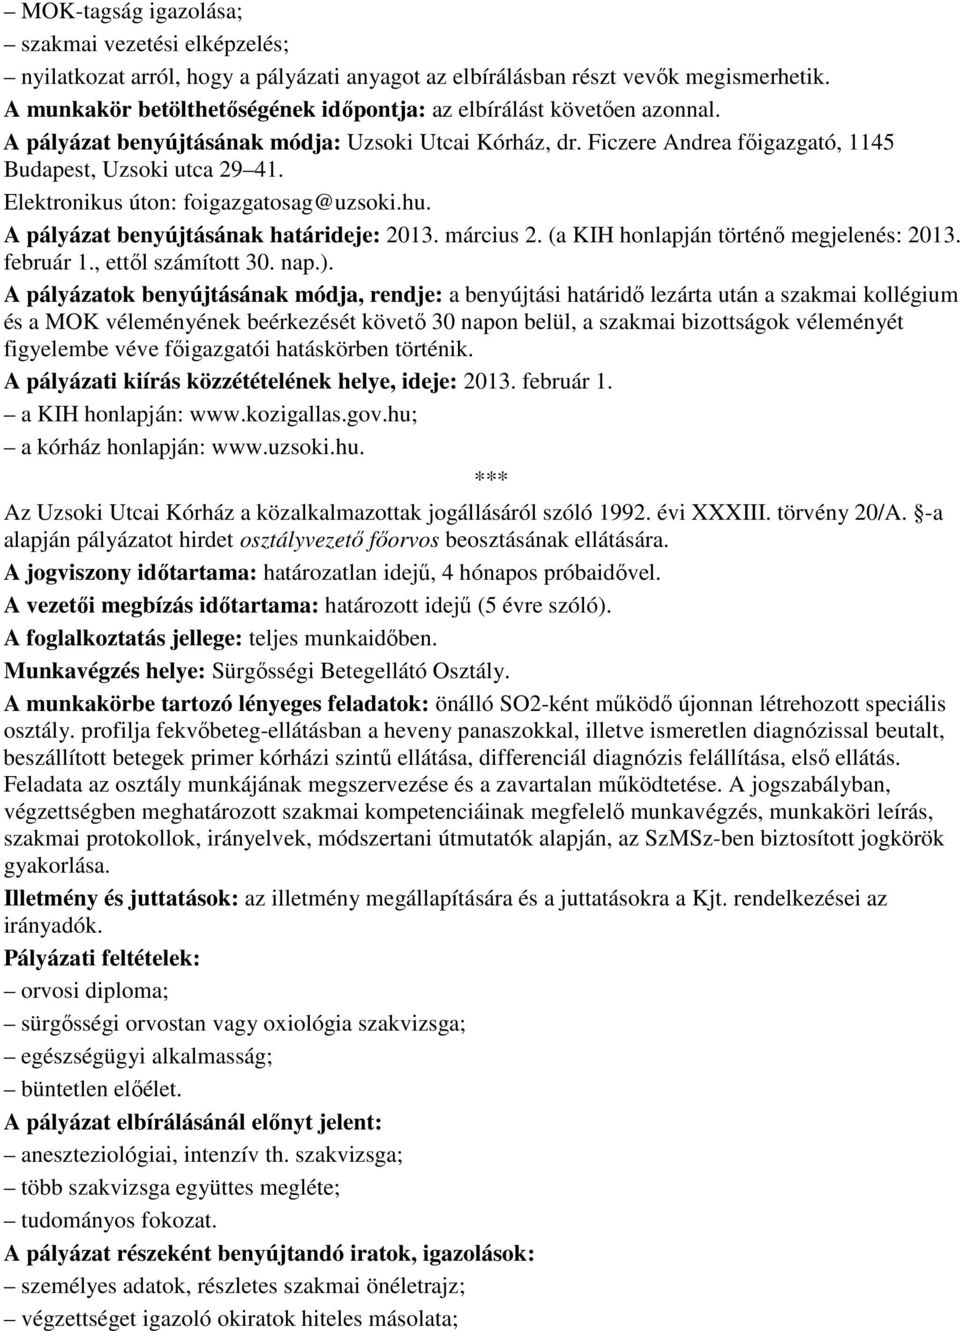 Elektronikus úton: foigazgatosag@uzsoki.hu. A pályázat benyújtásának határideje: 2013. március 2. (a KIH honlapján történı megjelenés: 2013. február 1., ettıl számított 30. nap.).